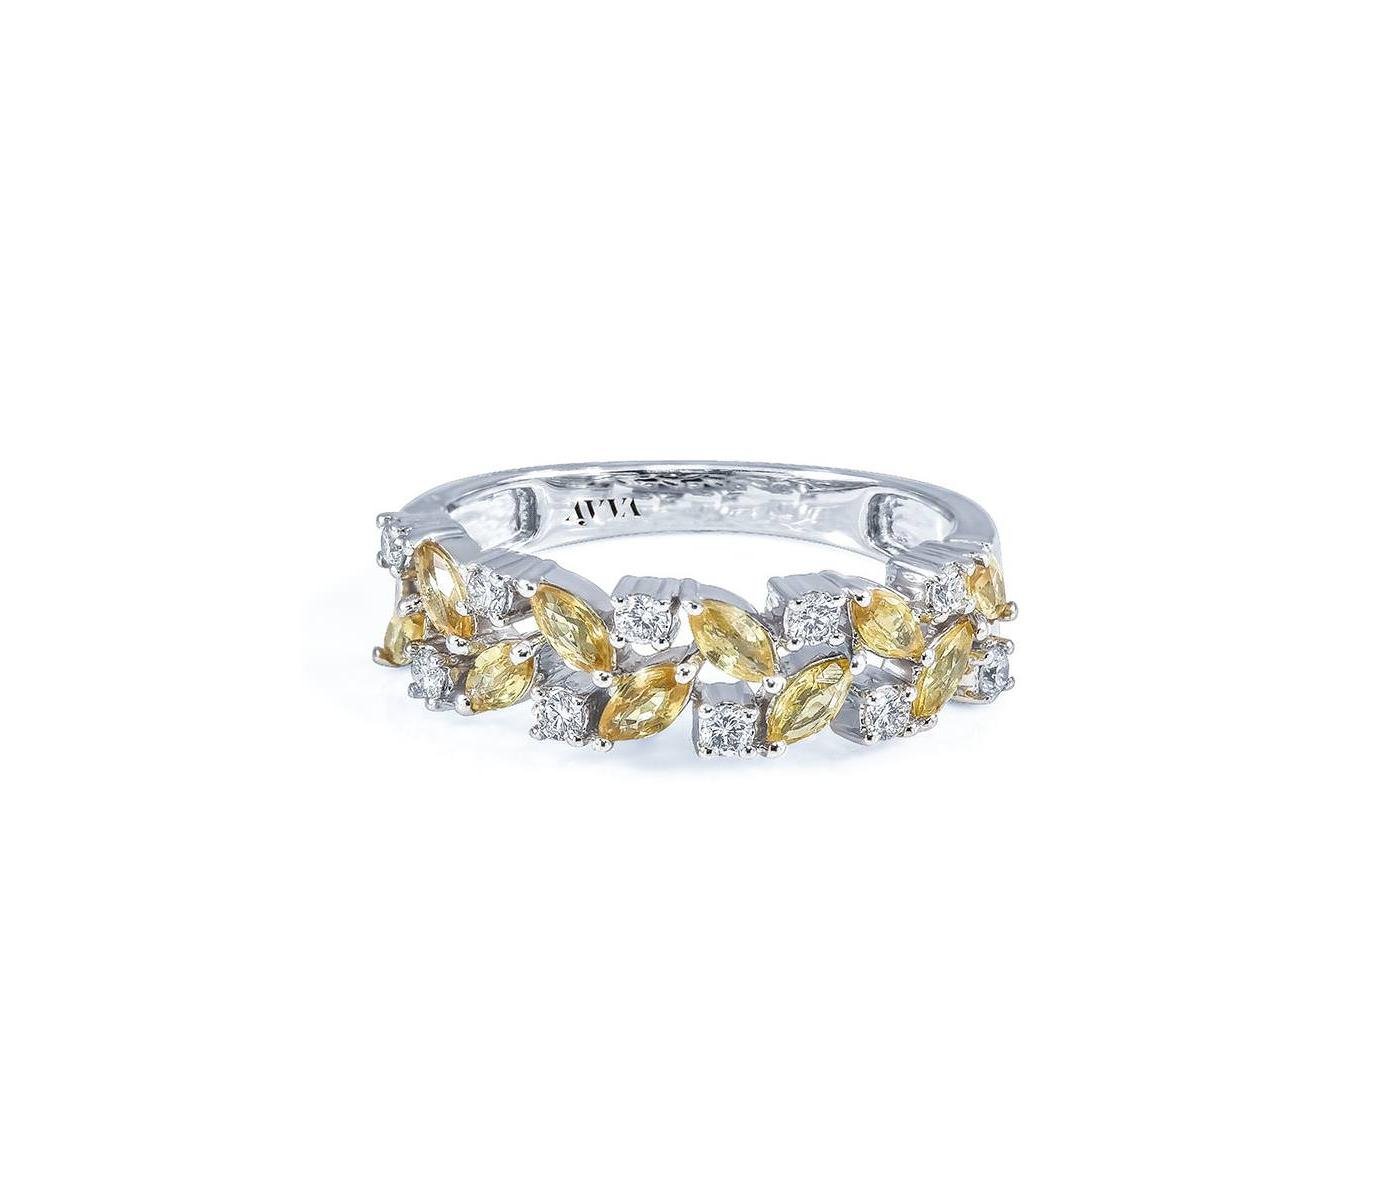 Ring by Ayva Jewelry